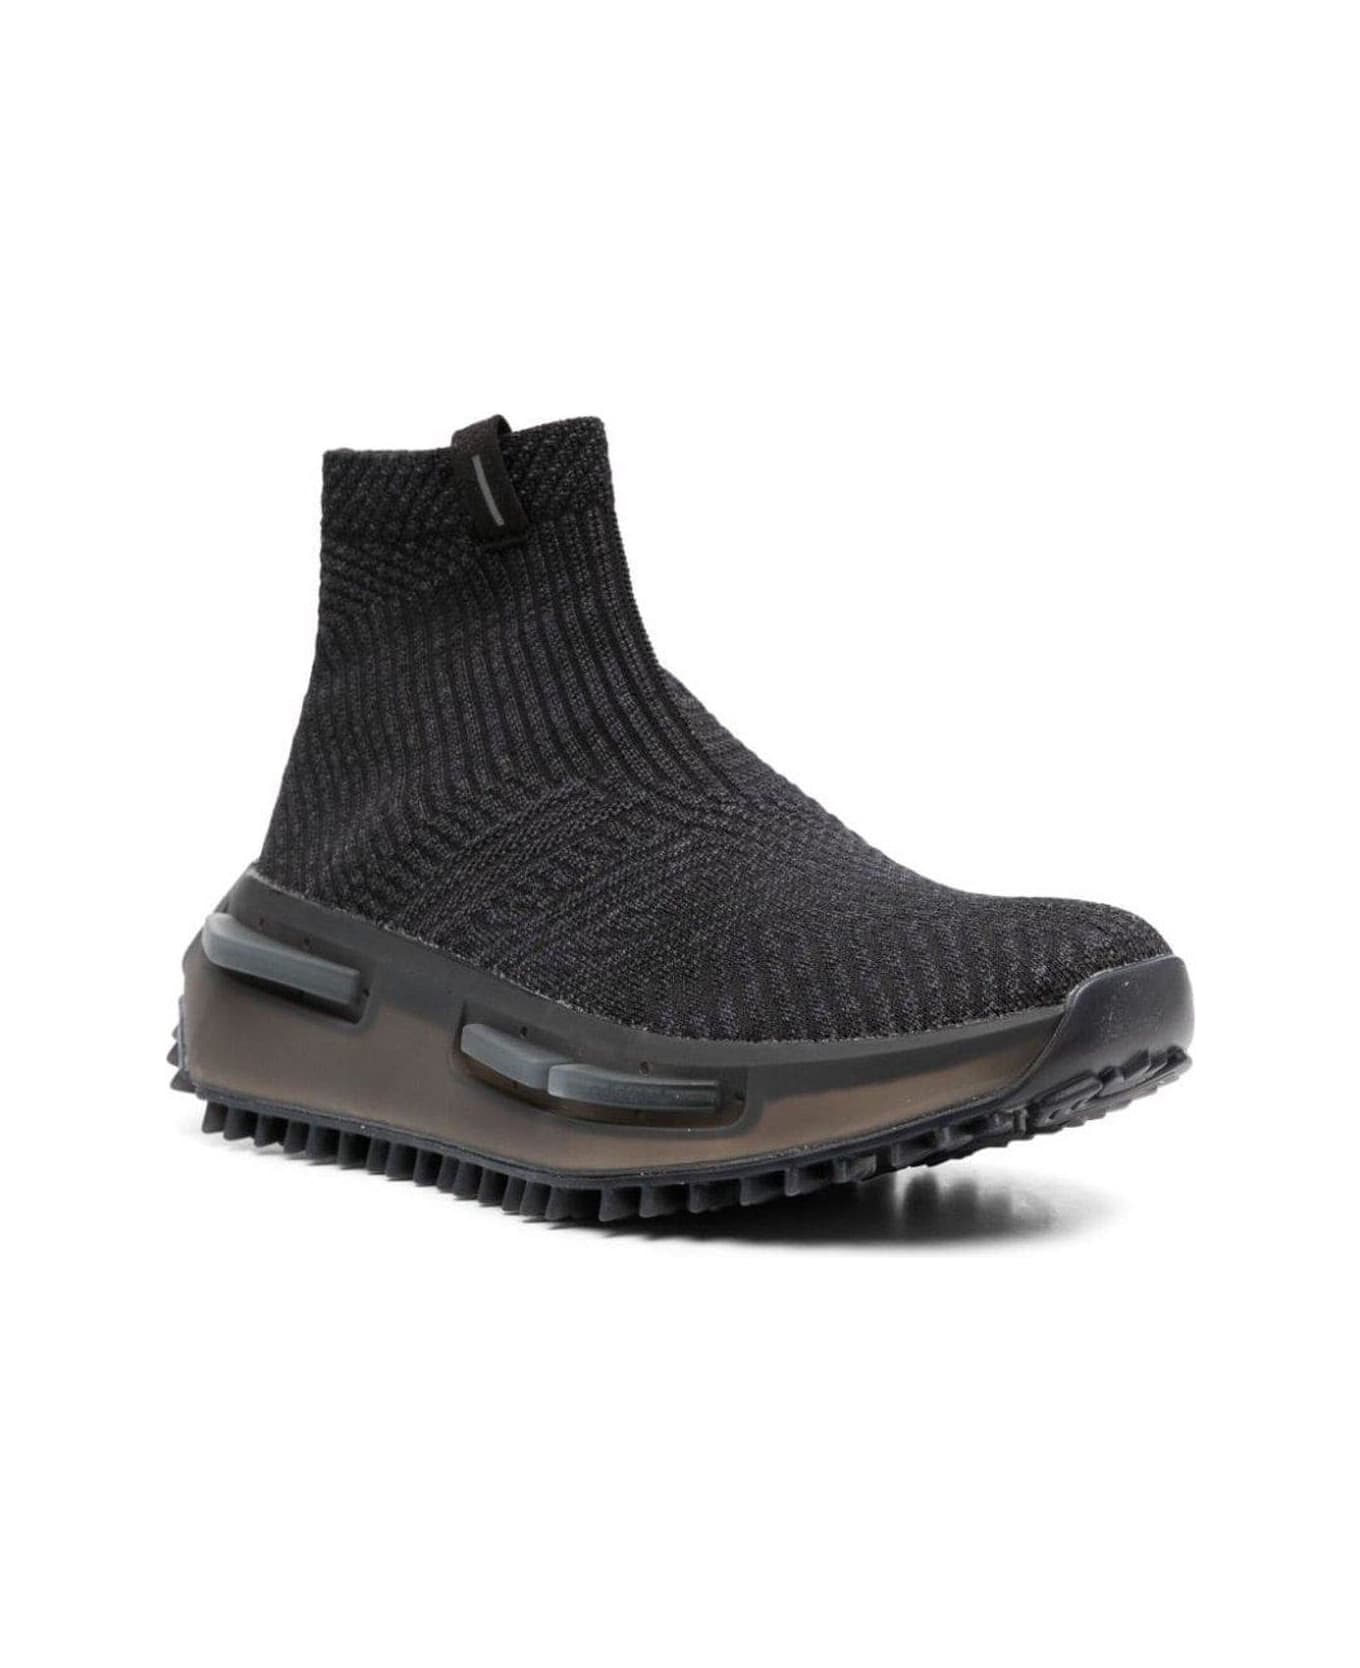 Adidas Originals Nmd_s1 Sock Sneakers - Black スニーカー